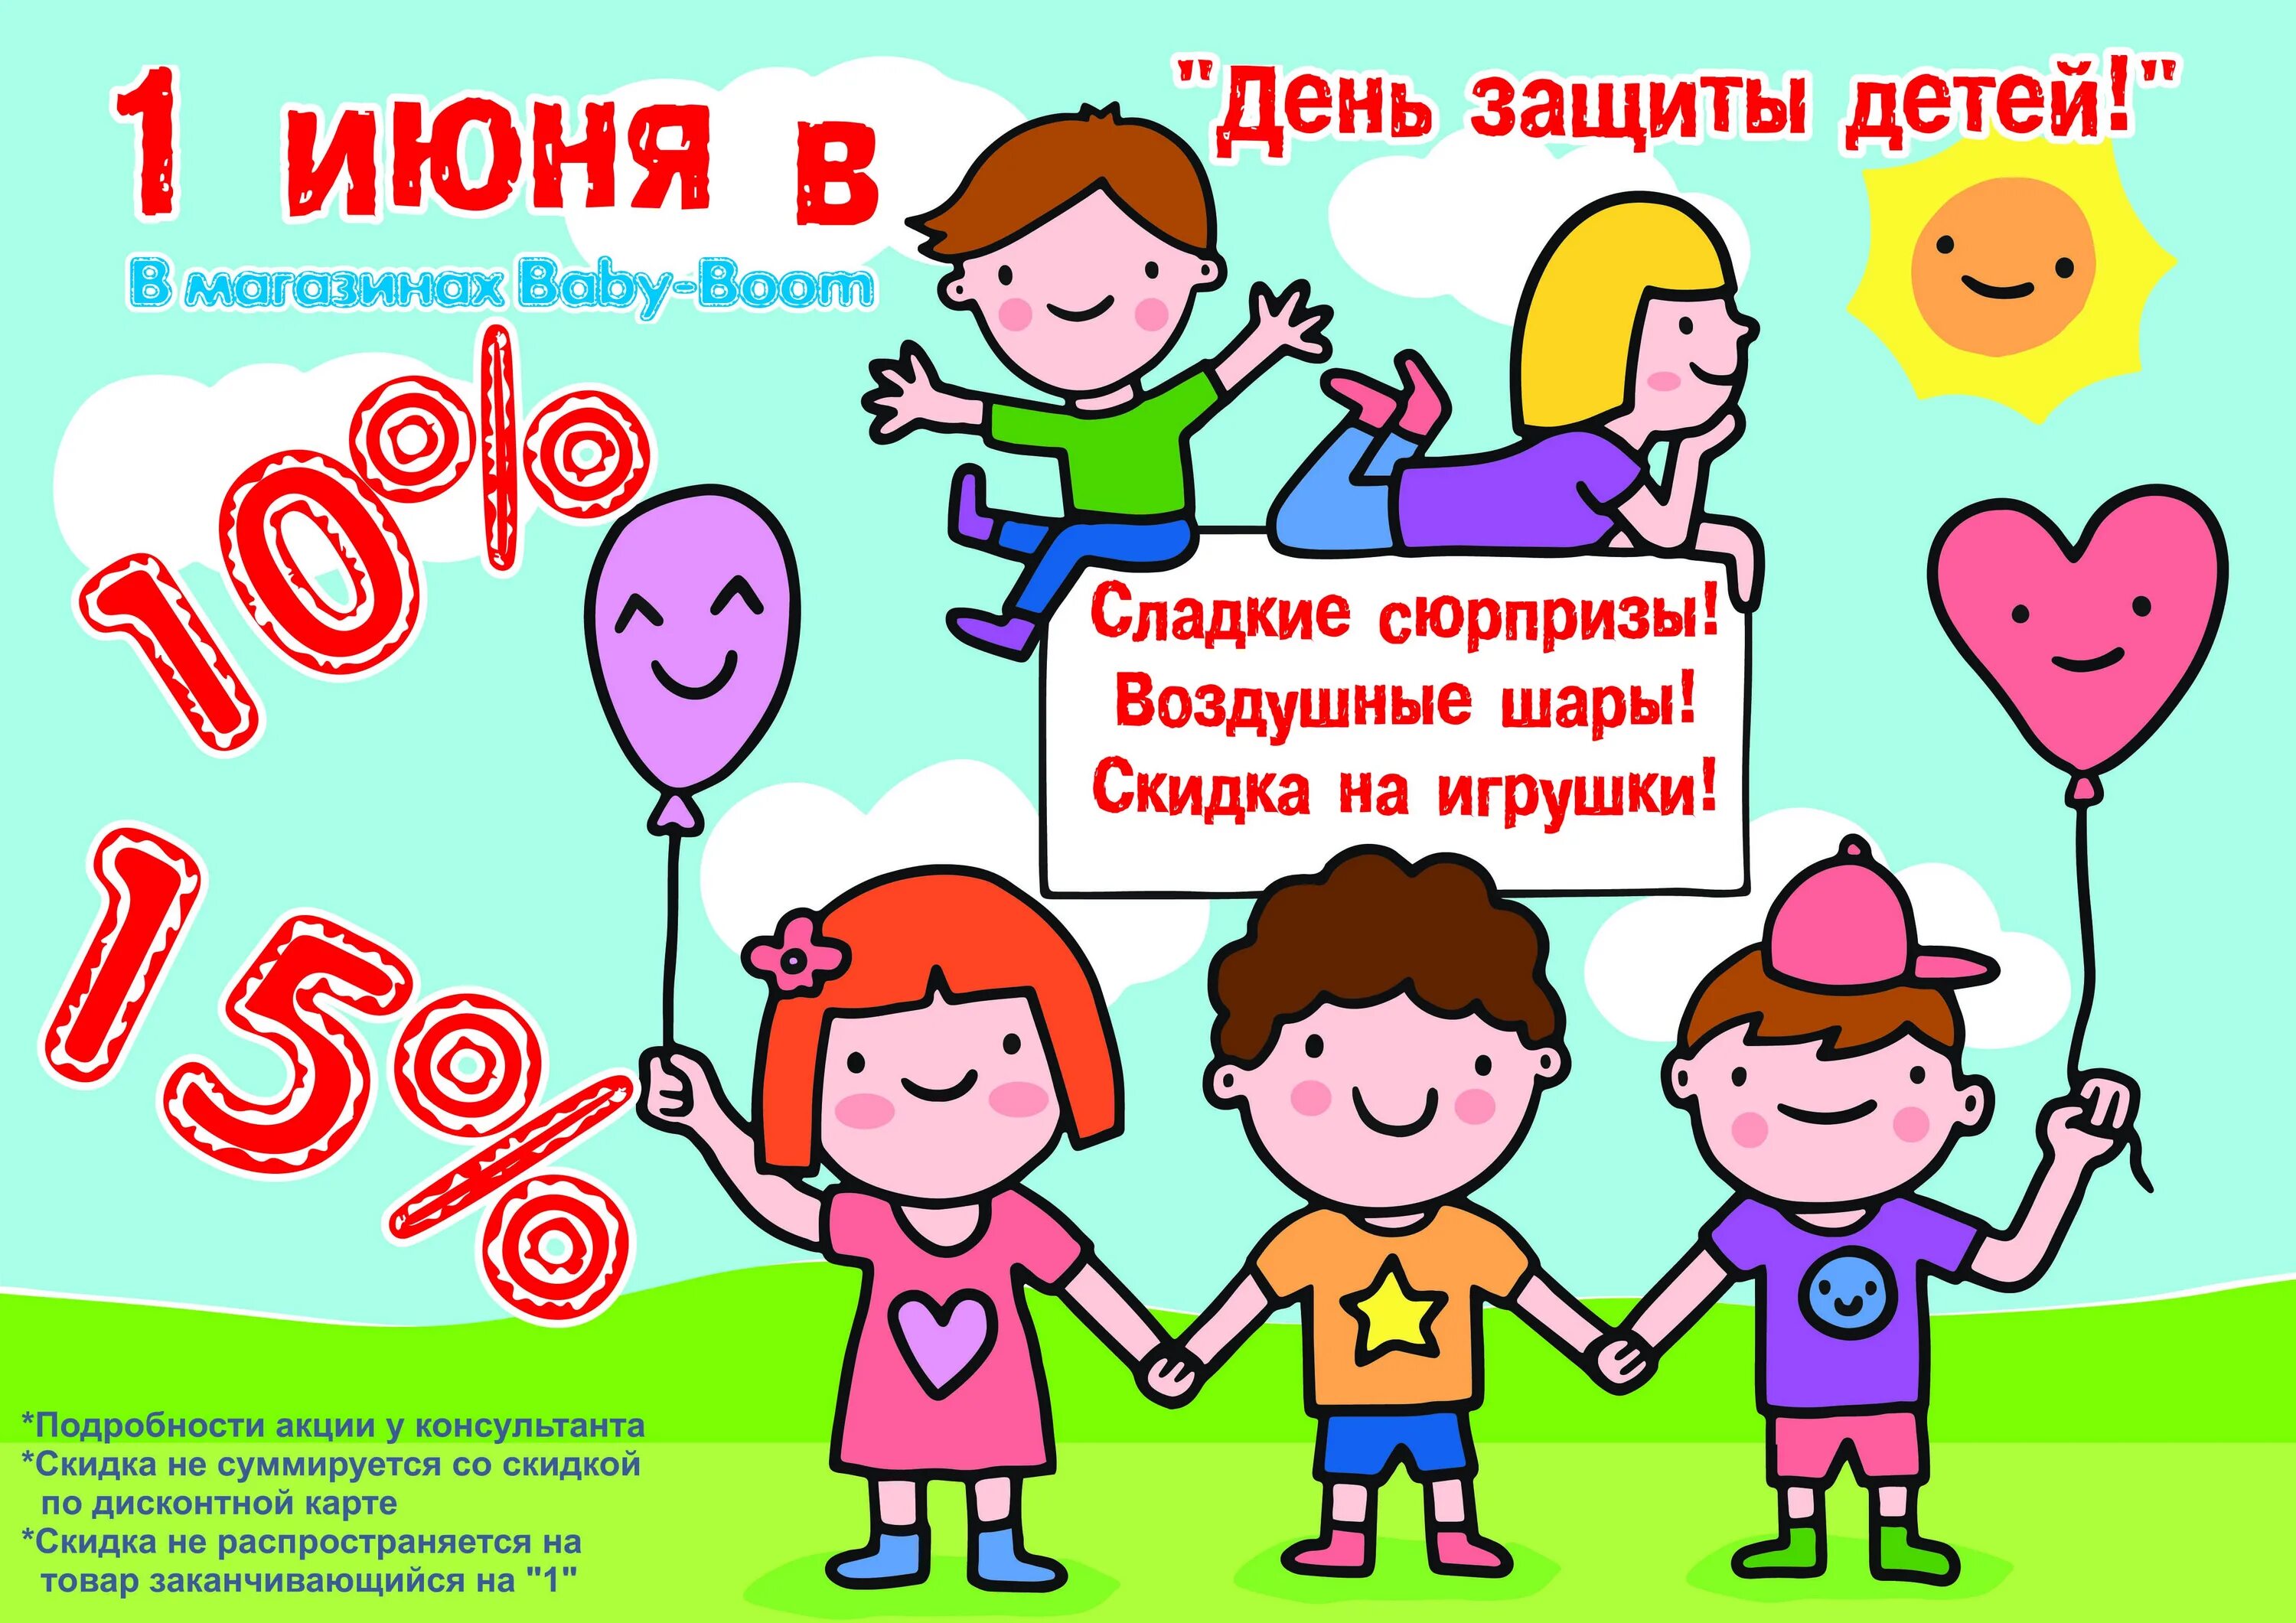 Открыт с 1 июня. День защиты детей скидки. Акция ко Дню защиты детей. 1 Июня день защиты детей. Акции ко Дню защиты детей в магазинах.